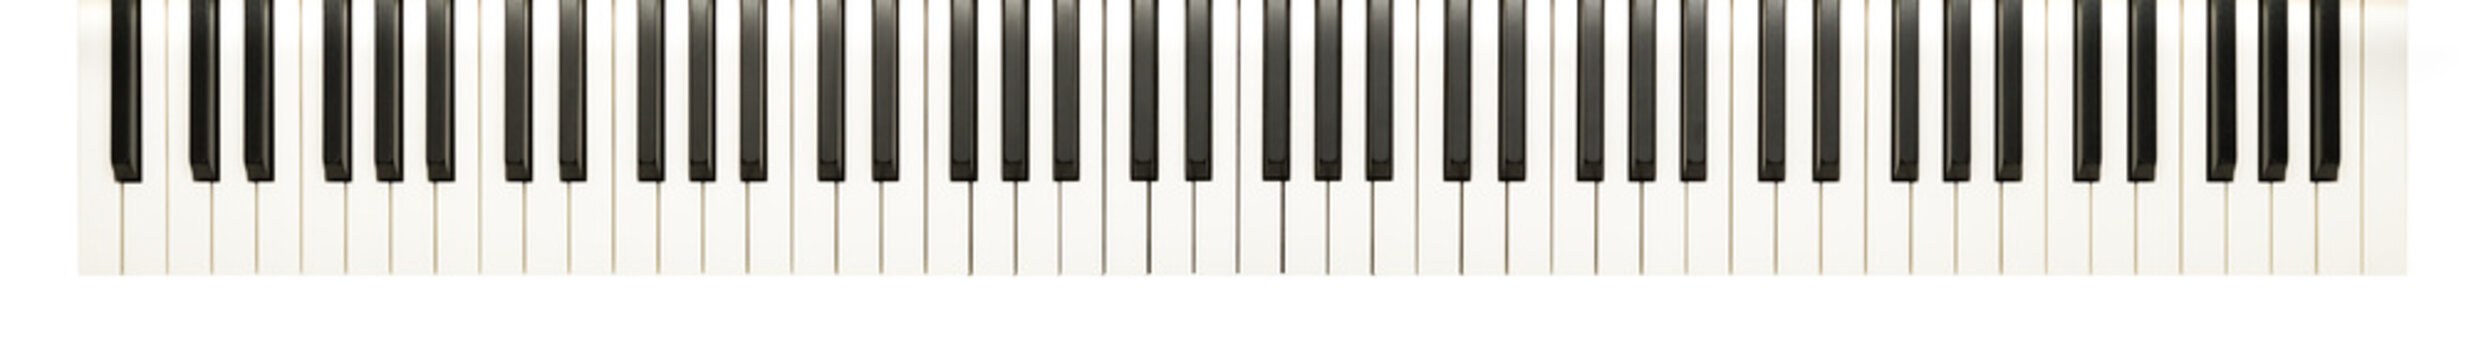 88-key piano keyboard - Tastiera pianoforte a 88 tasti